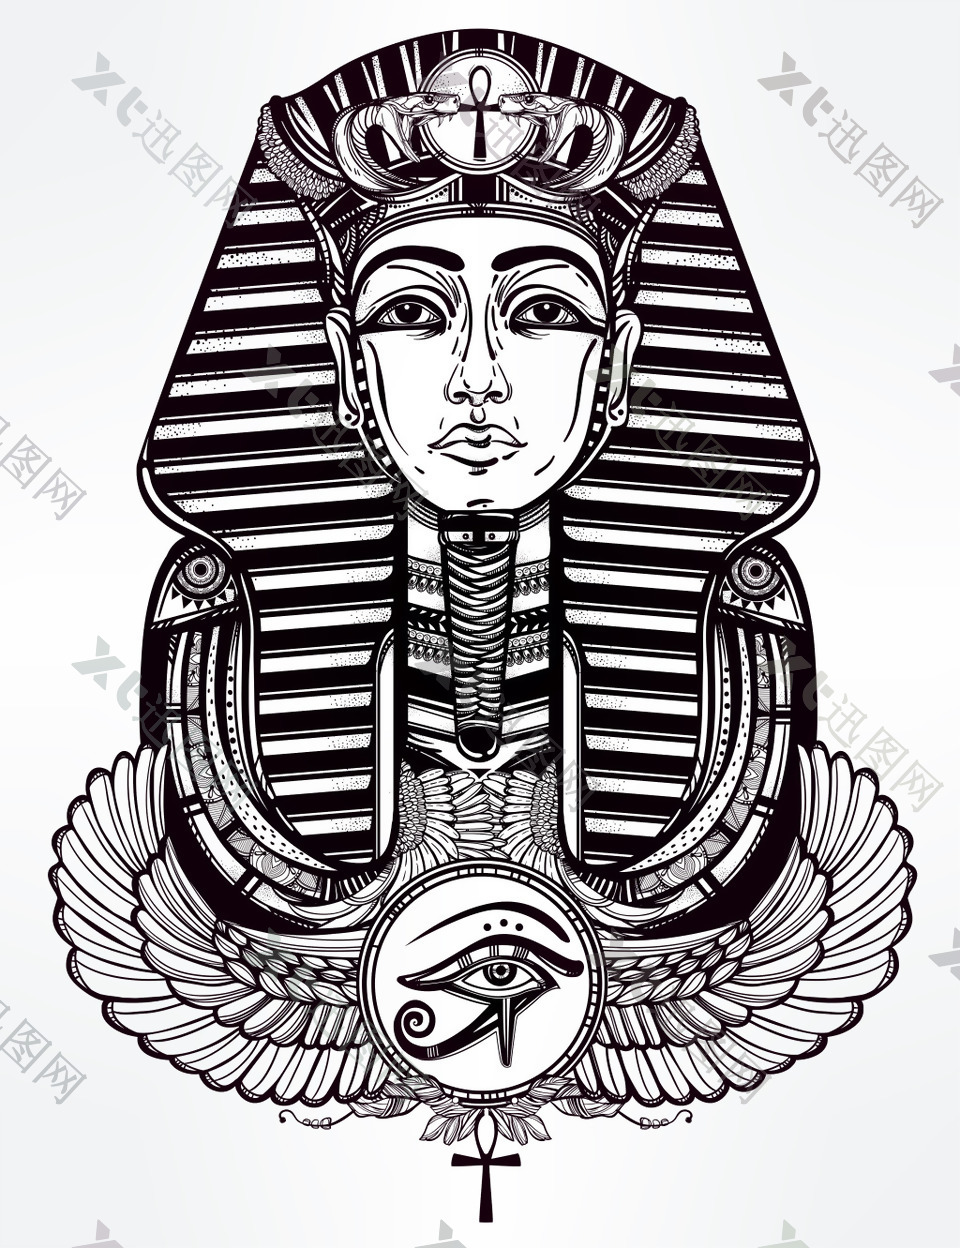 埃及人面狮身像图案